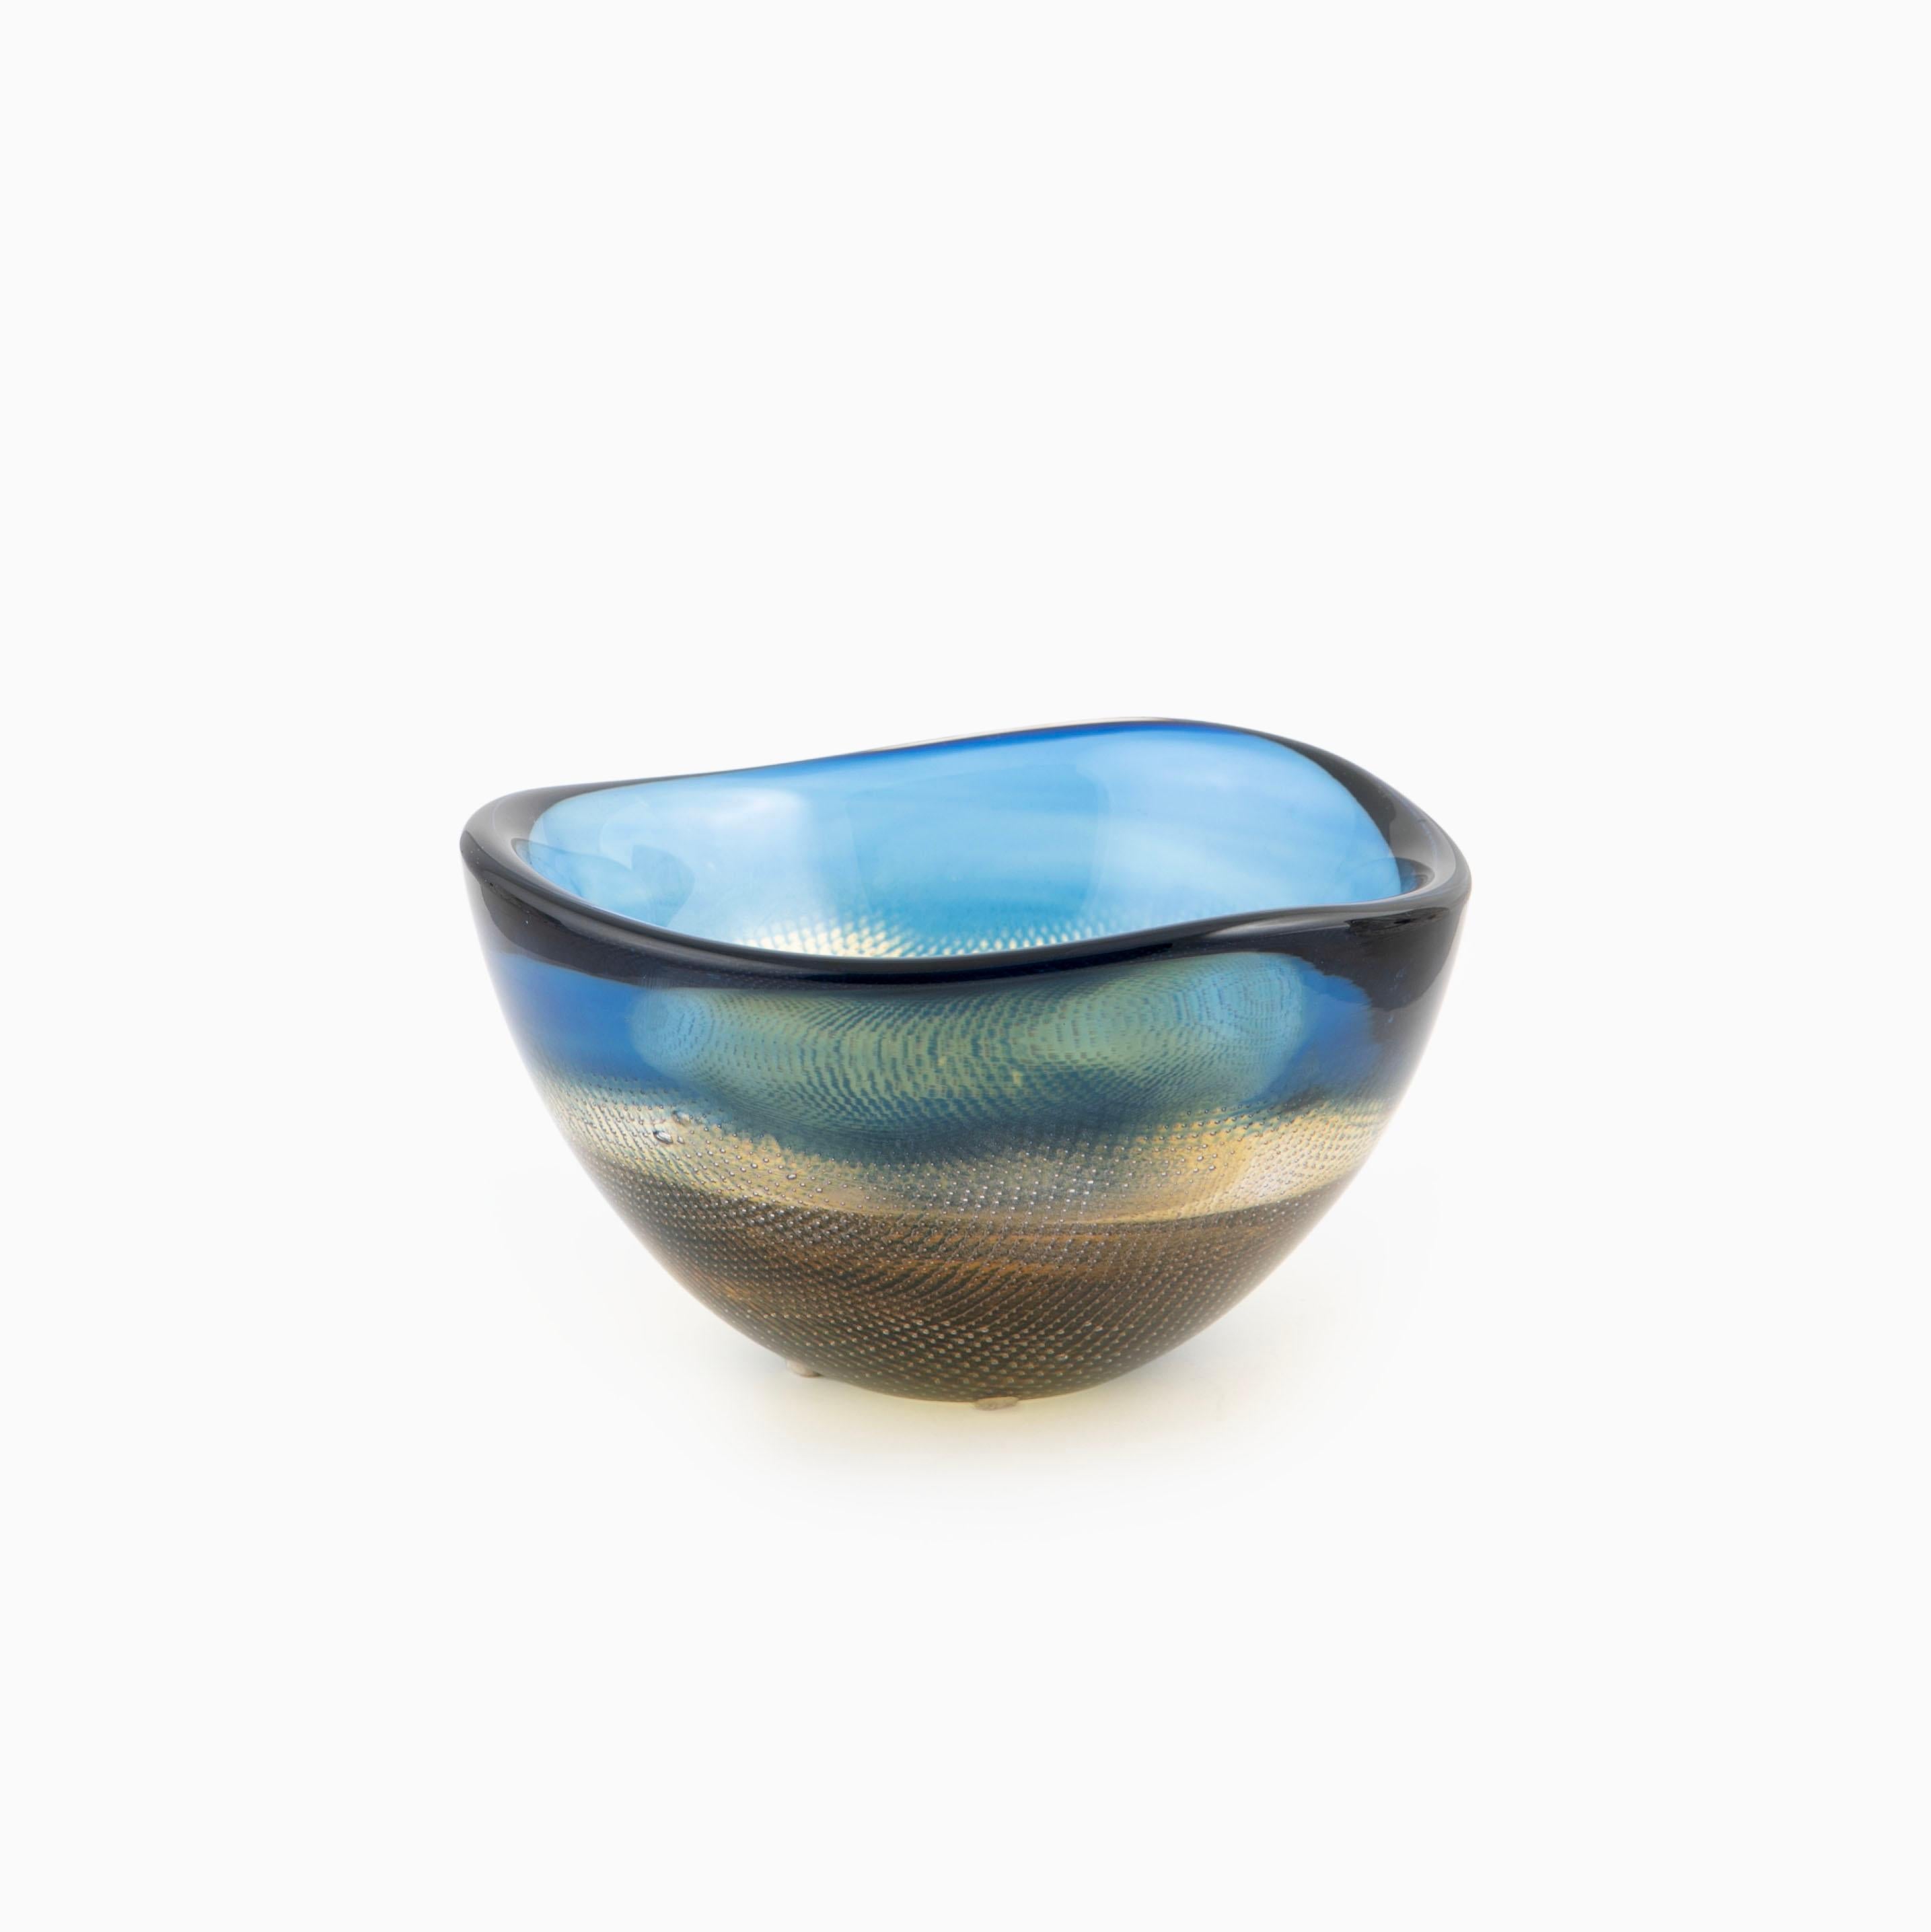 Sven Palmqvist, 1906-1984

Un bol en verre d'art vintage de la série Kraka (résille) conçue par Sven Palmquist pour Orrefors Suède dans les années 1950.

Cristal clair, verre bleu et ambre avec une décoration en maille métallique.
Signé avec :